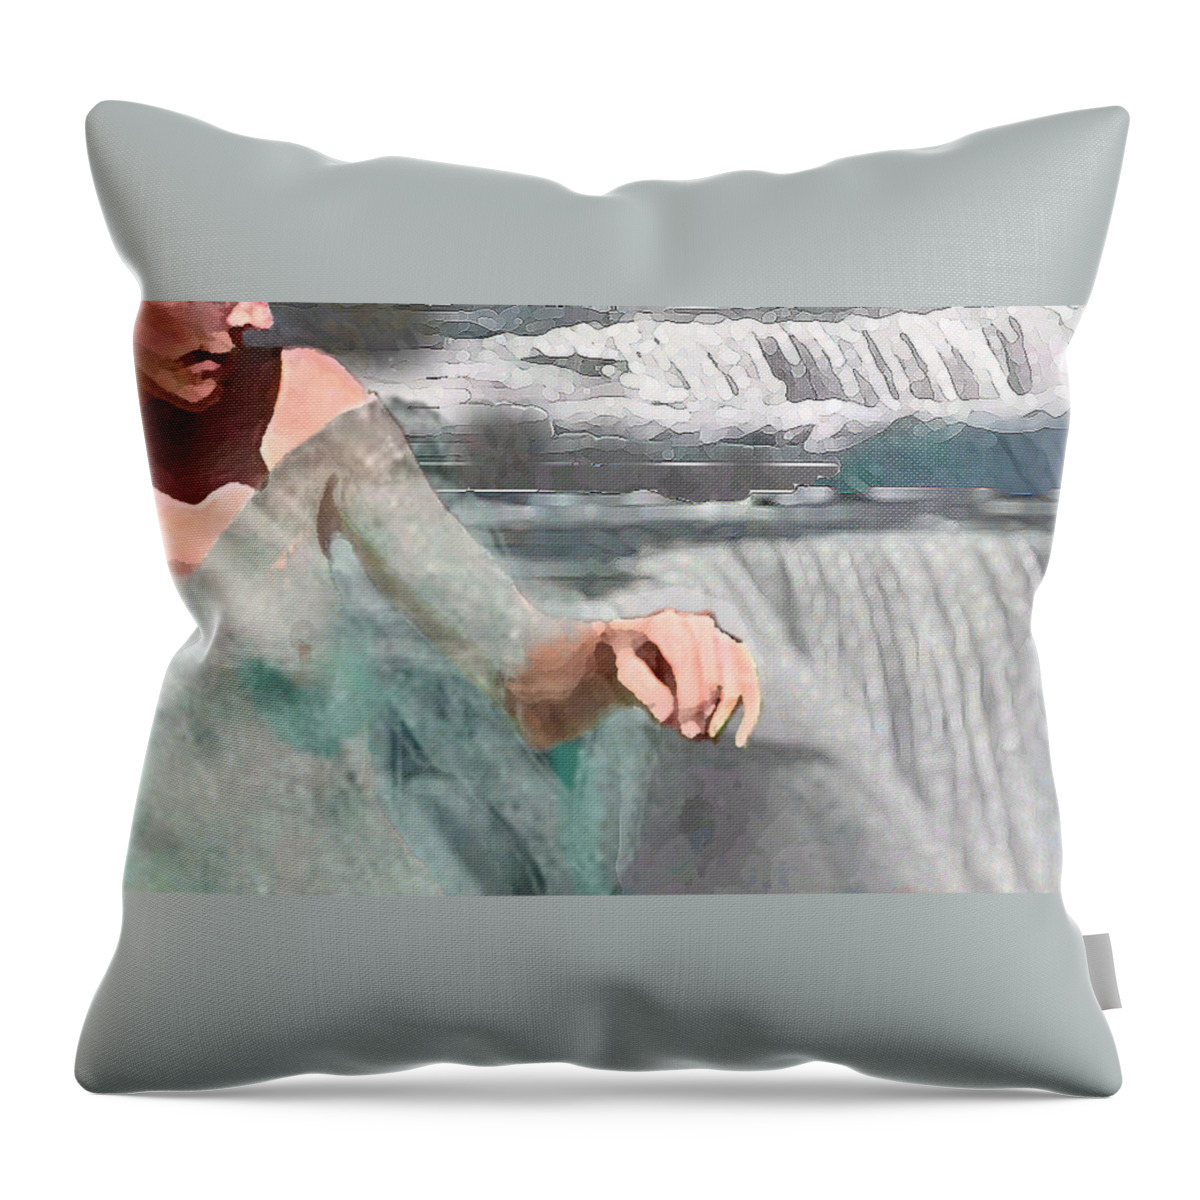  Waterscape Throw Pillow featuring the digital art Cascade by Steve Karol